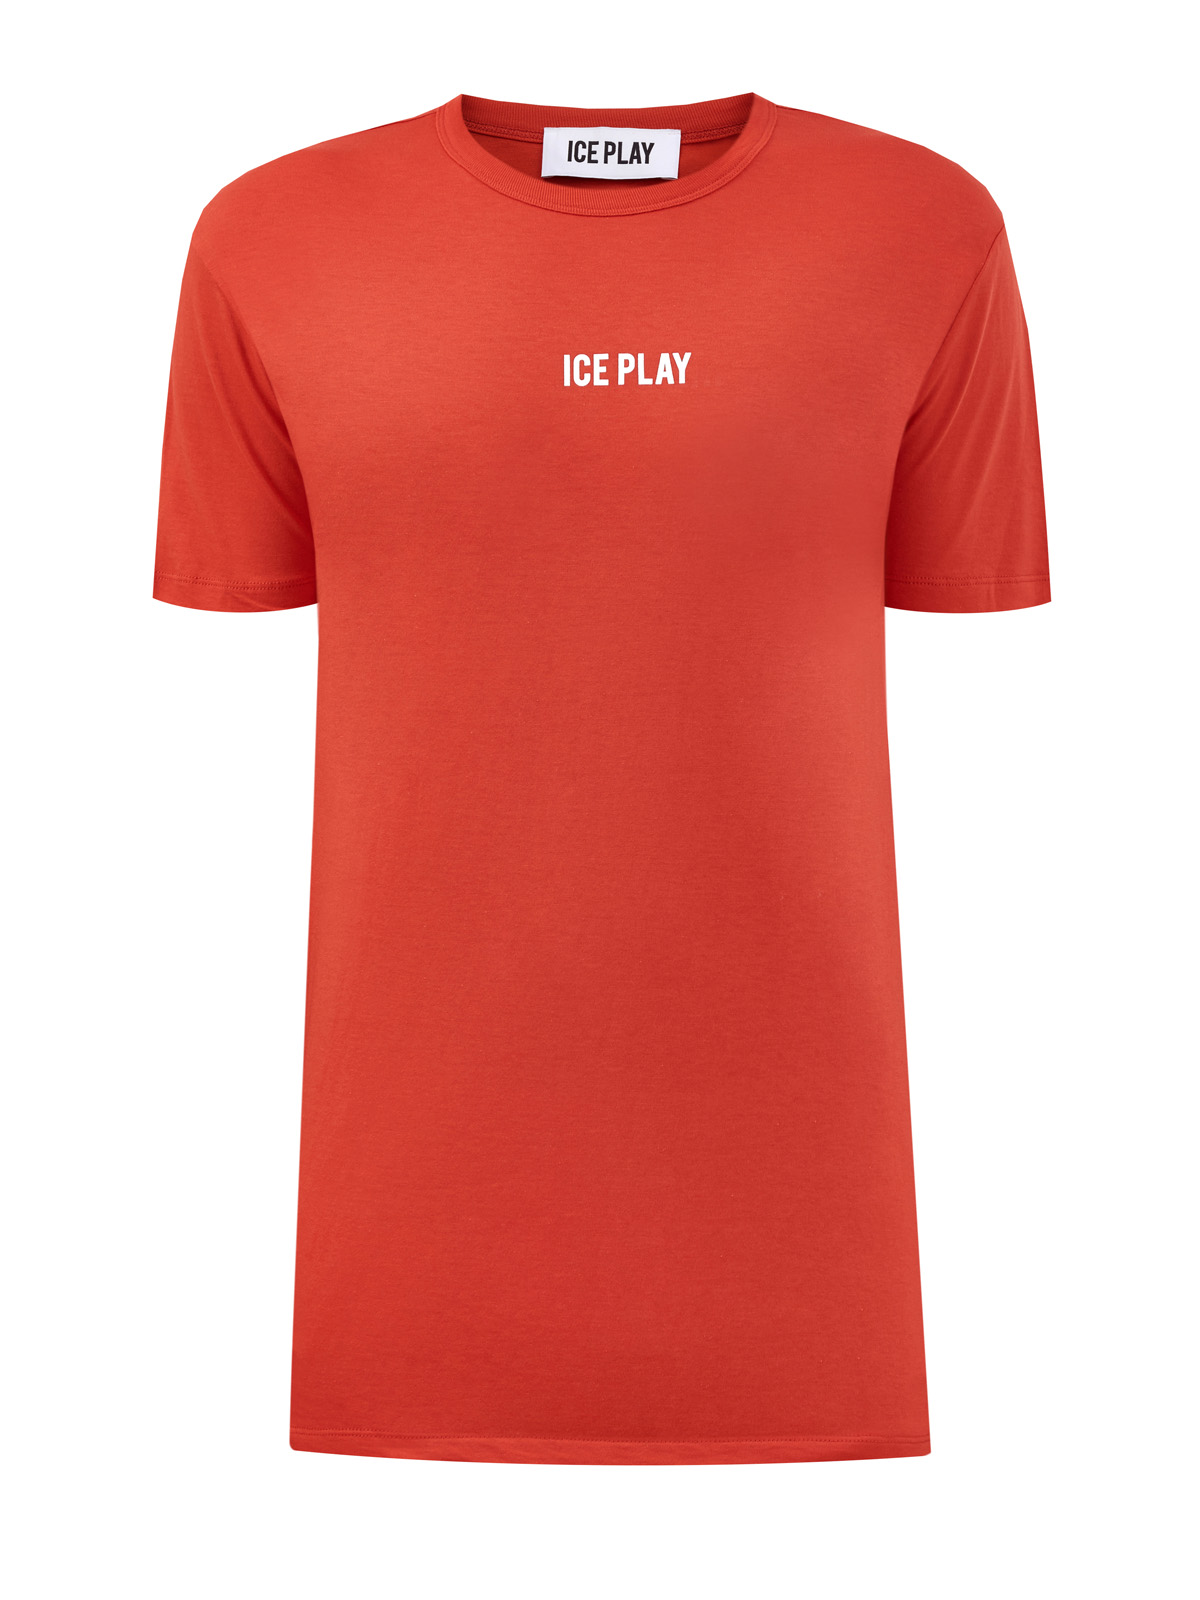 Хлопковая футболка с контрастным логотипом бренда ICE PLAY, цвет оранжевый, размер L - фото 1